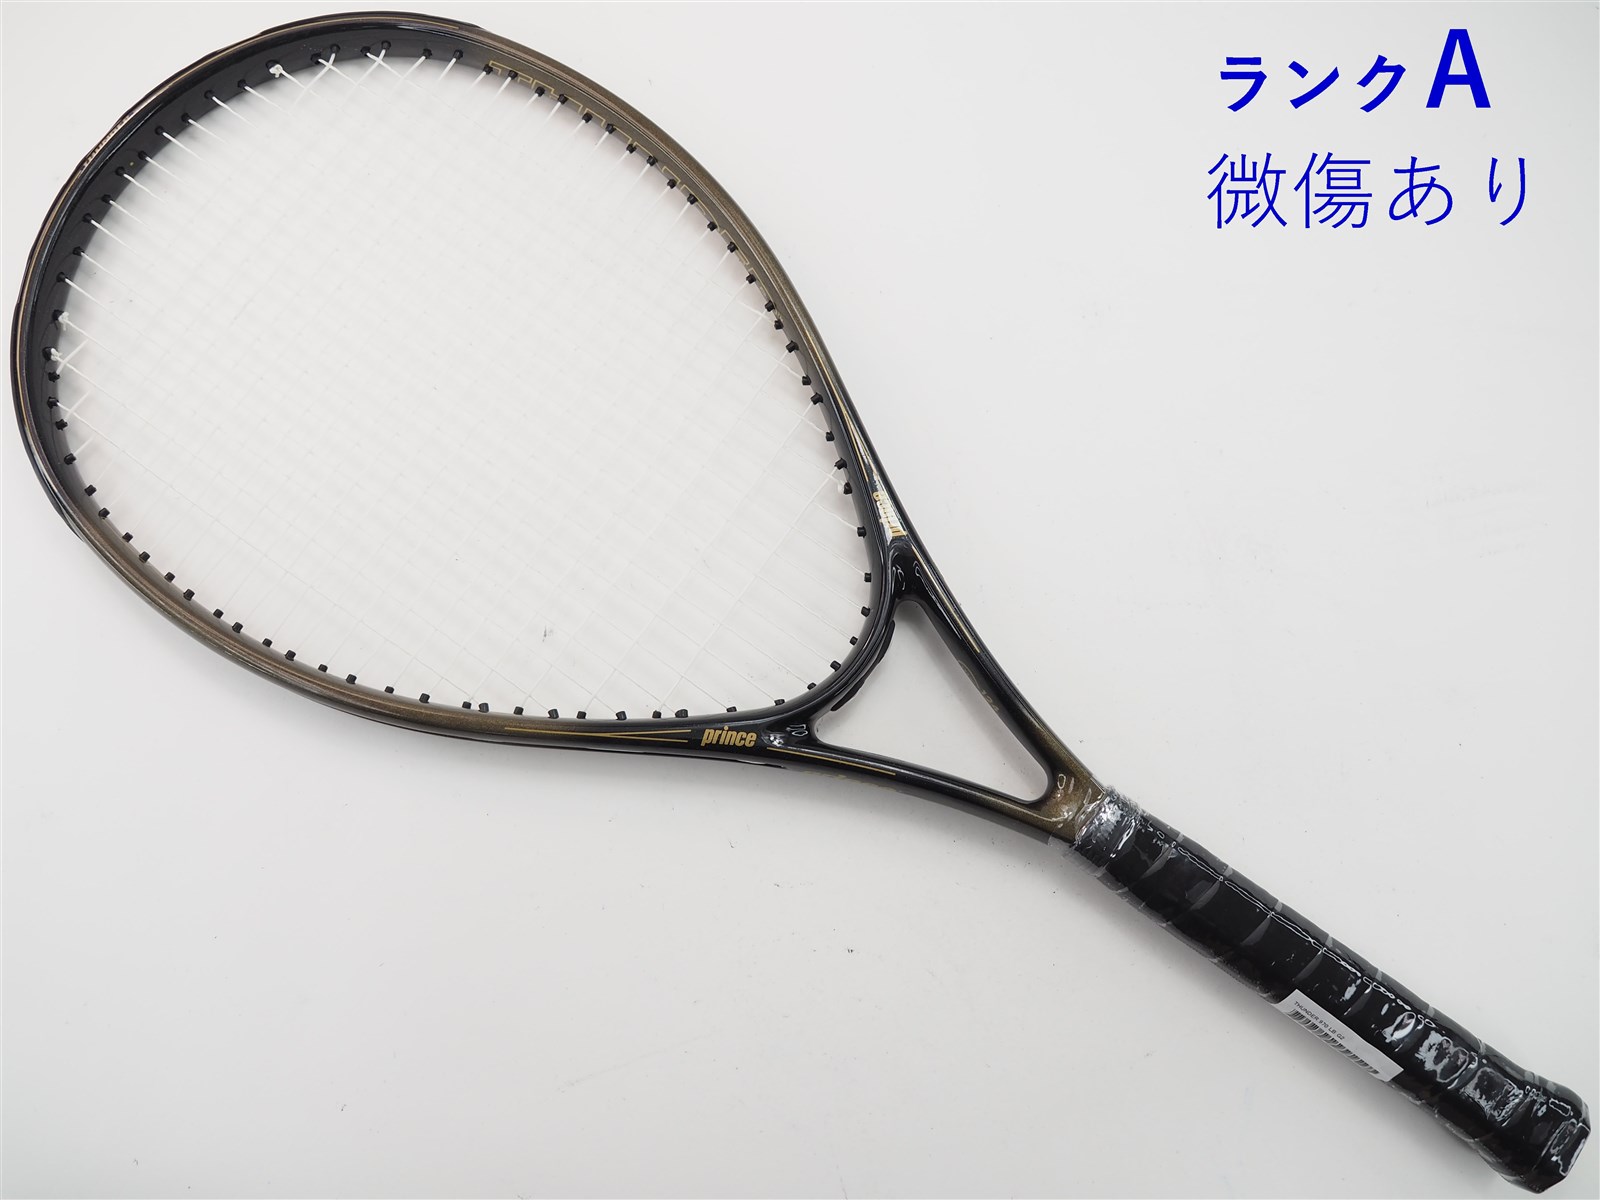 【中古】プリンス サンダー 970 ロングボディーPRINCE THUNDER 970 LB(G2)【中古 テニスラケット】【送料無料】